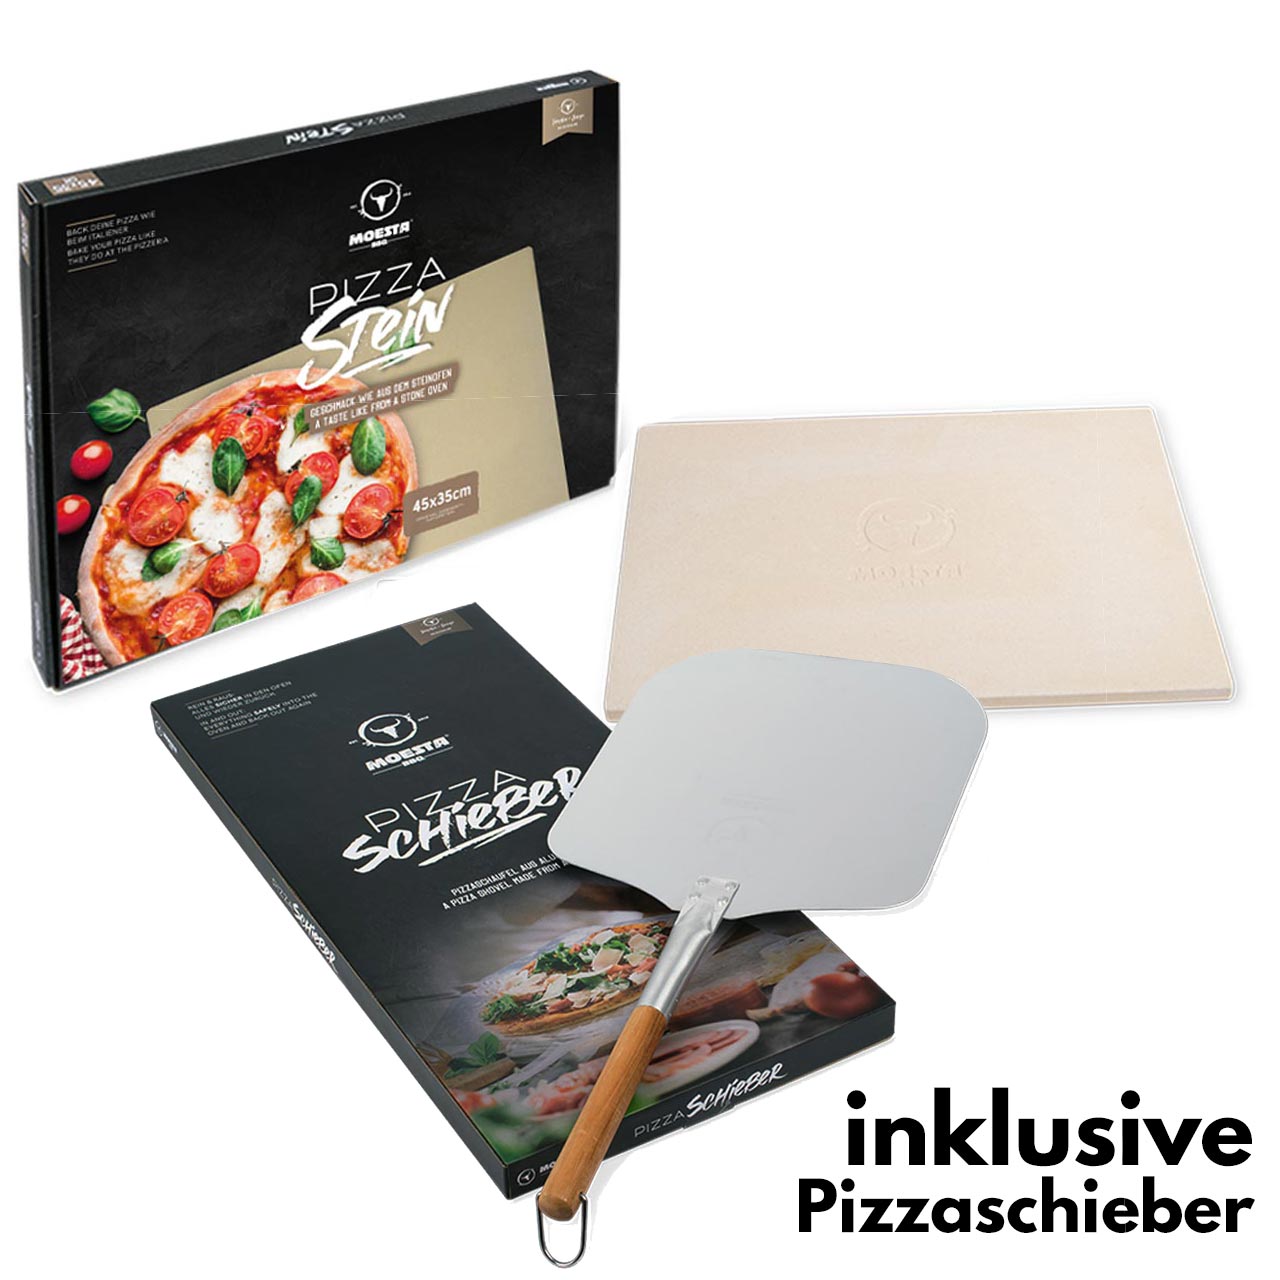 Moesta BBQ Pizzastein + Pizzaschieber Bundle Premium